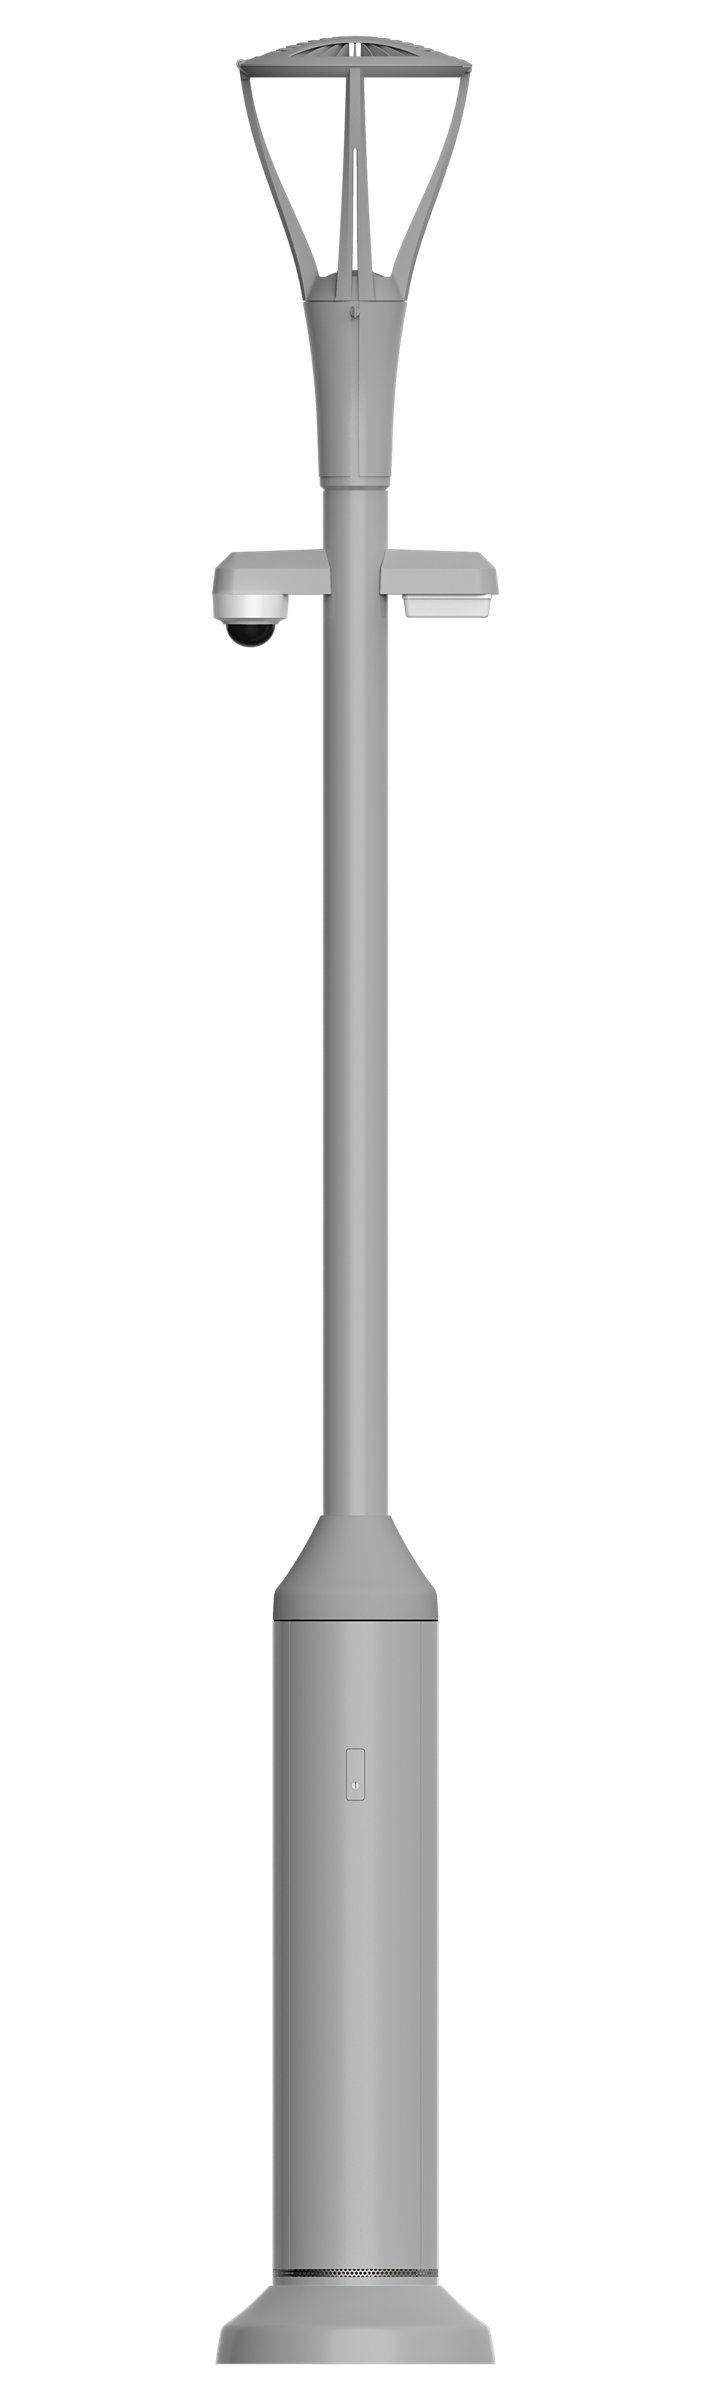 BrightSites I-Series Slim Pole